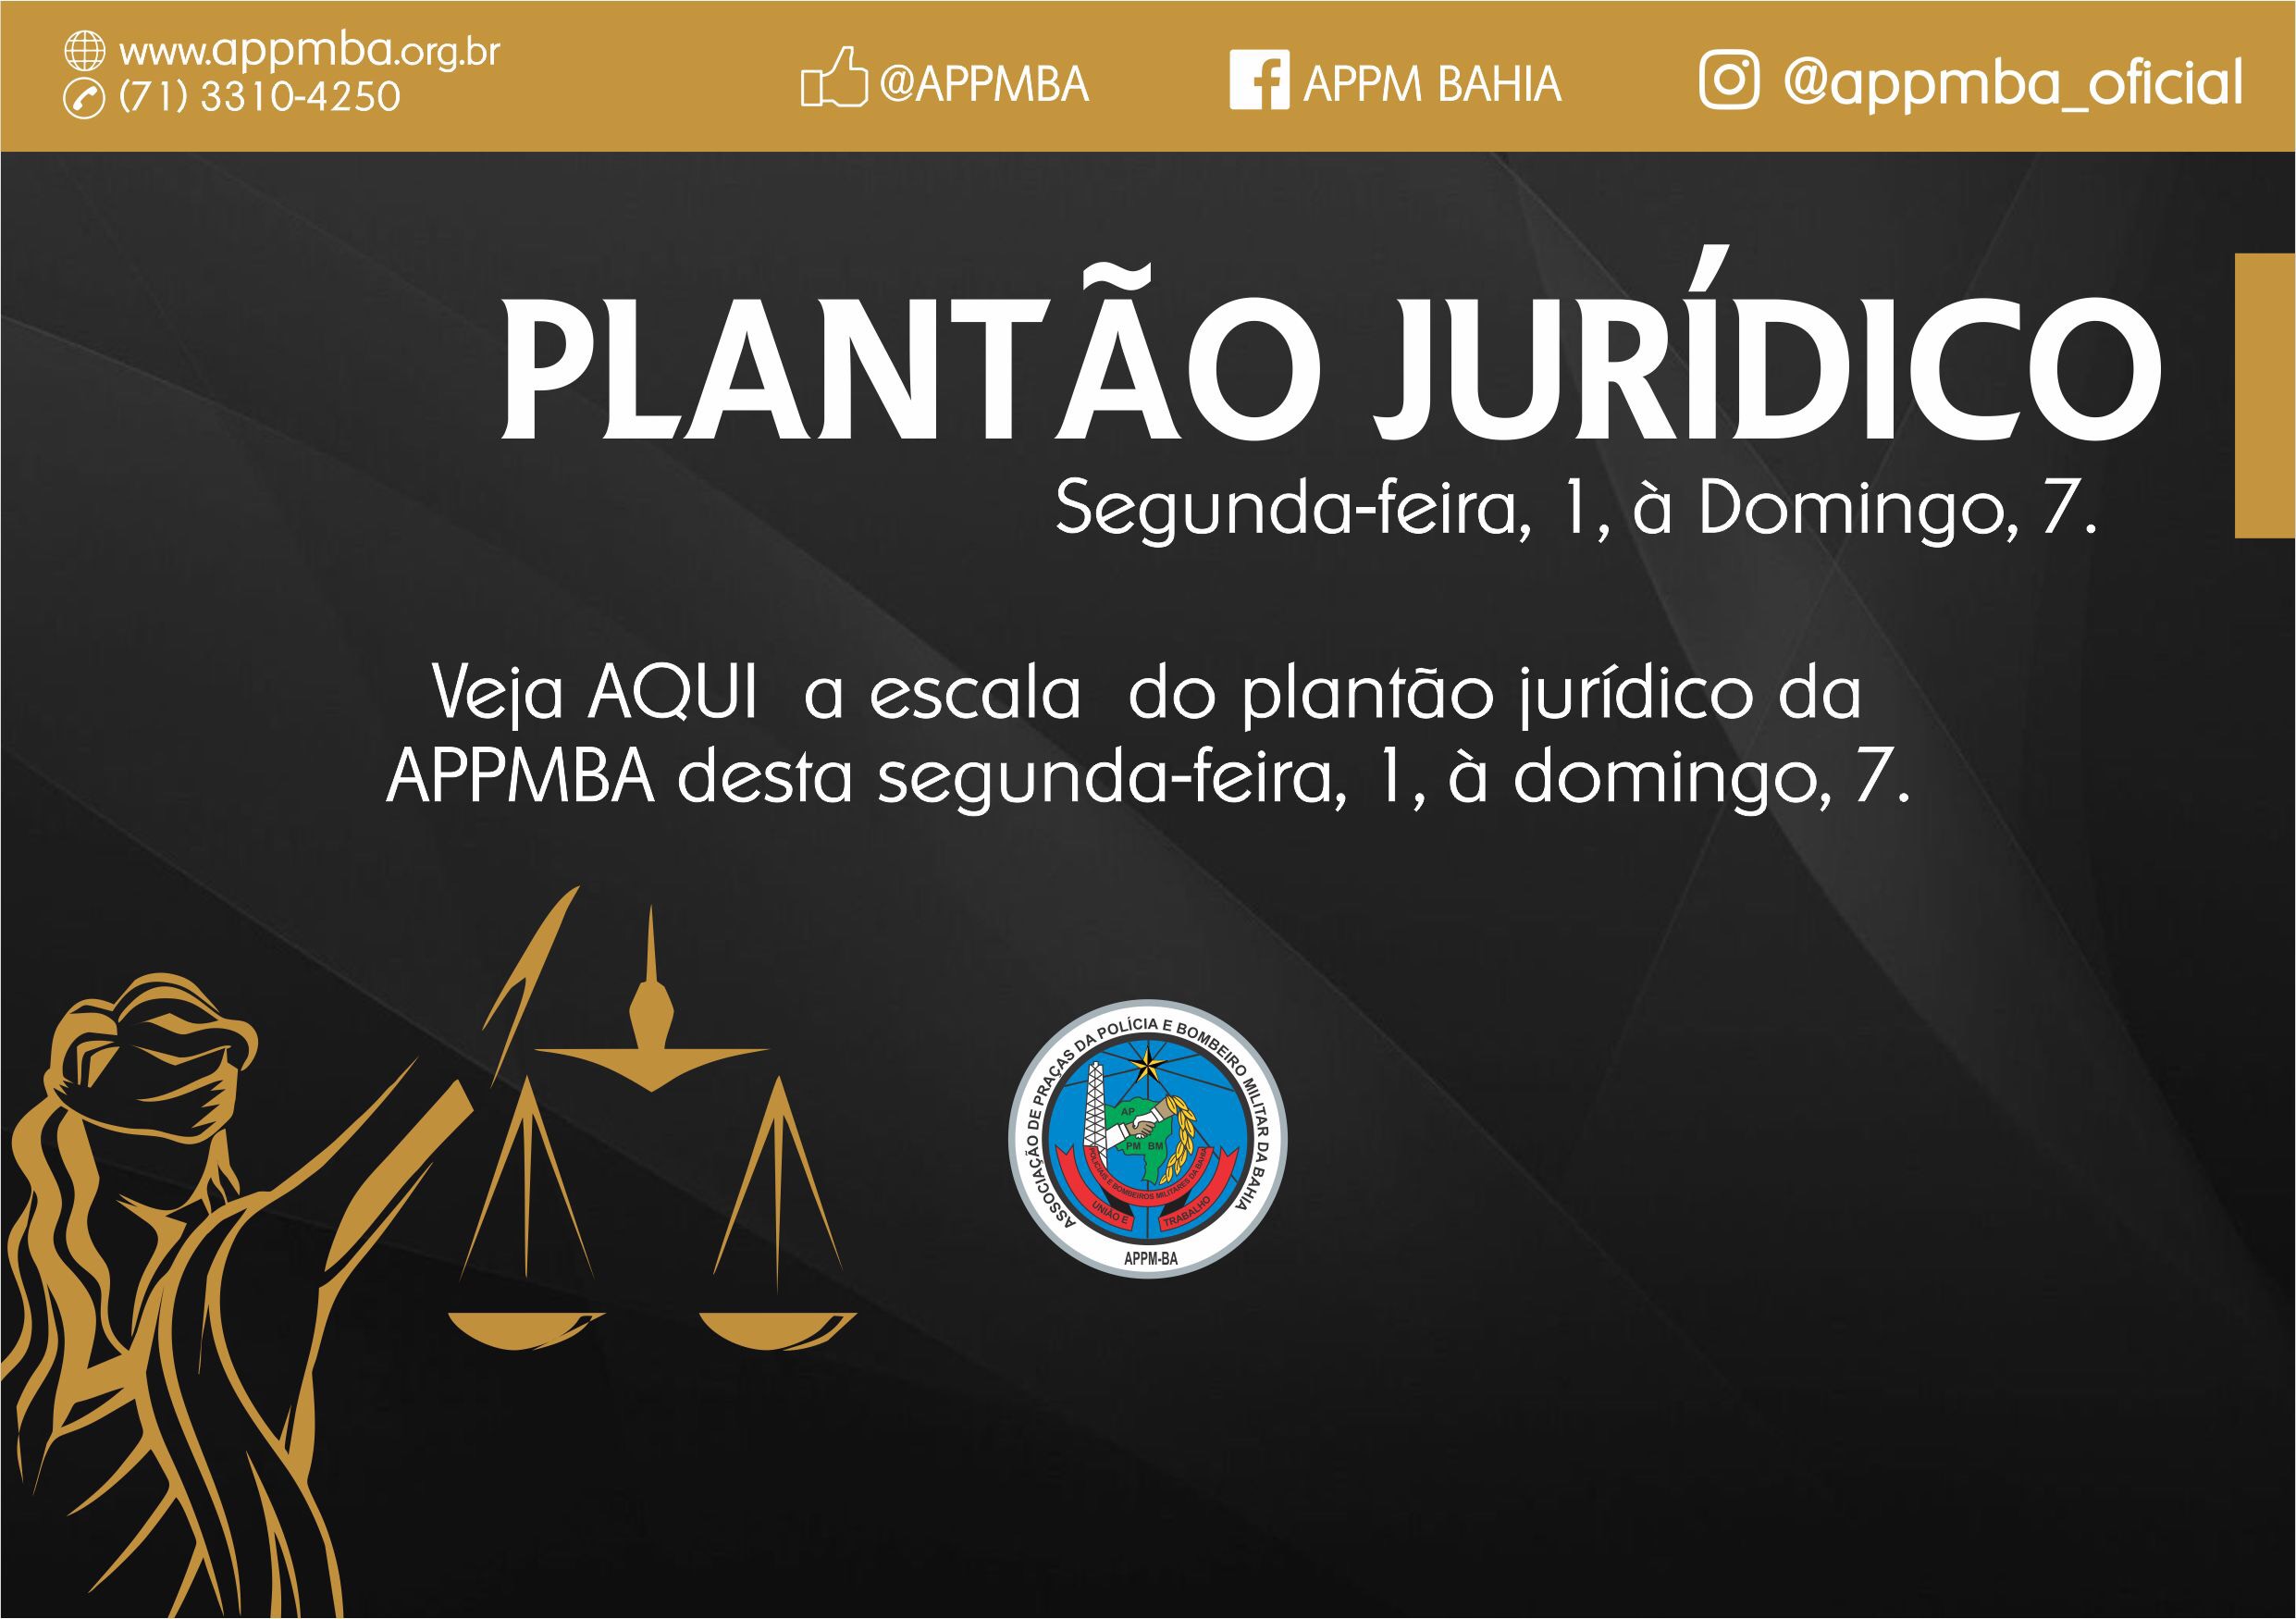 Plantão Jurídico APPM-BA, dias 1 à 7/10/2018